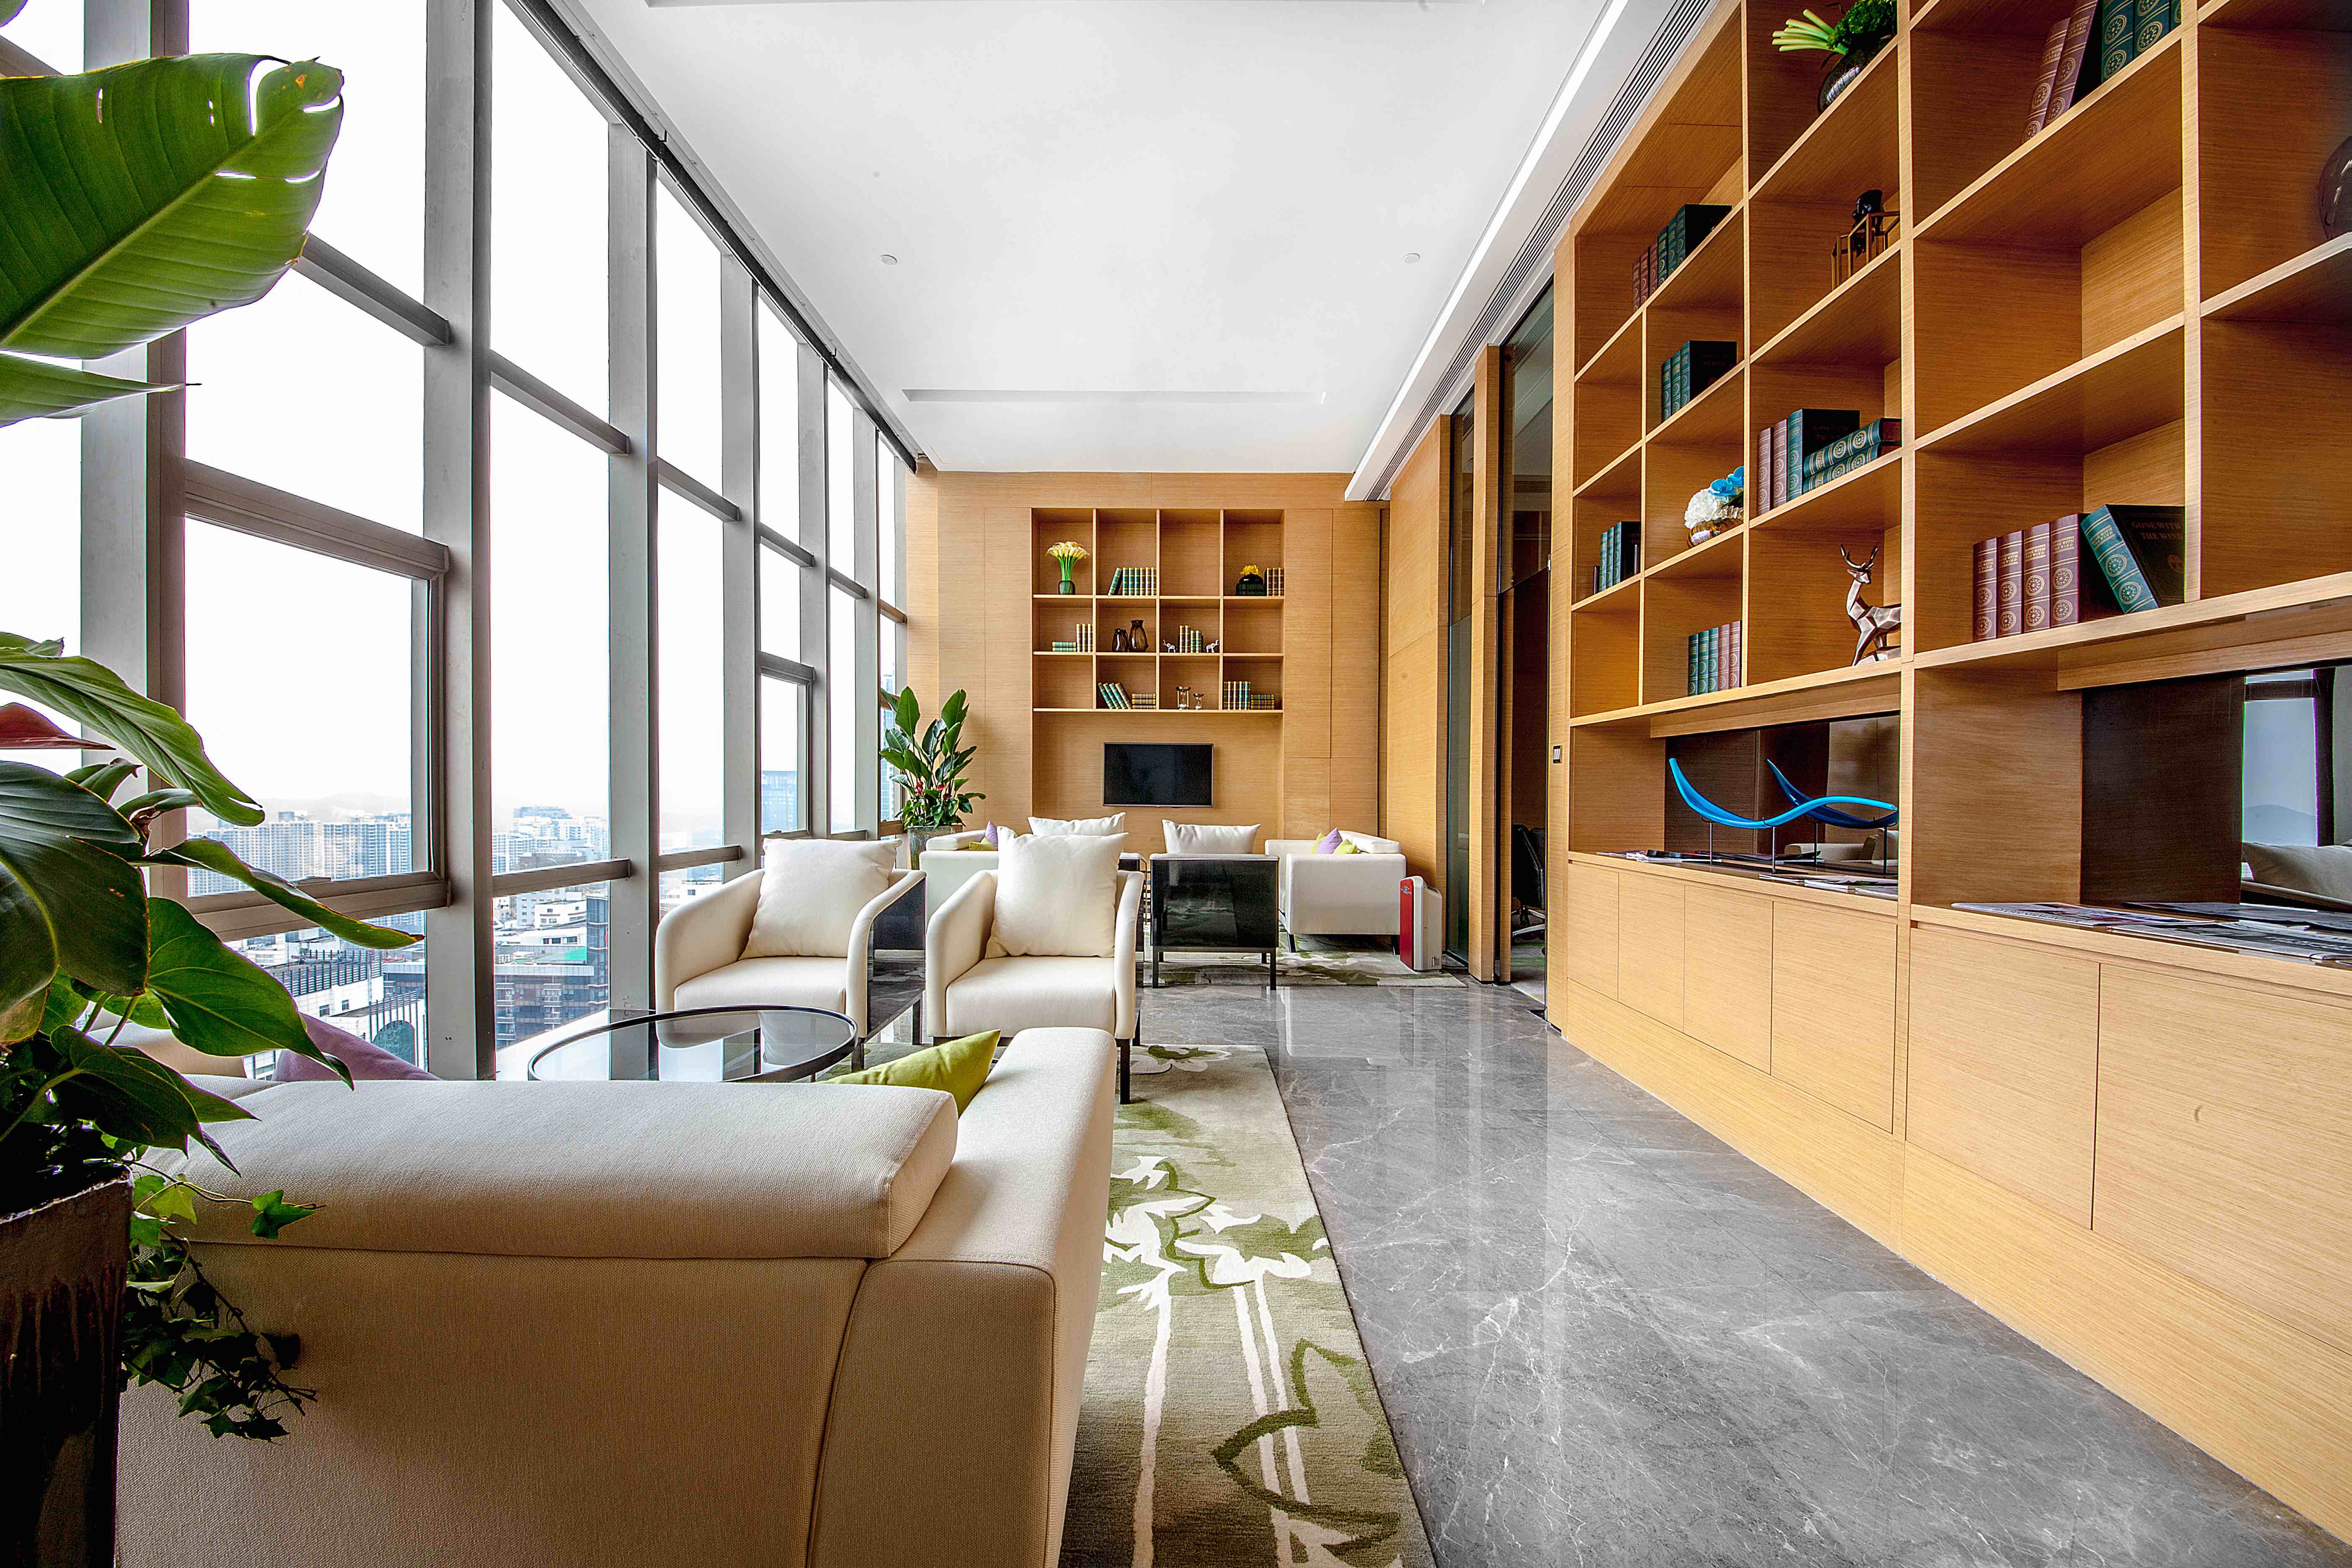 Wyndham Grand Shenzhen Executive Club Lounge Sofa Area